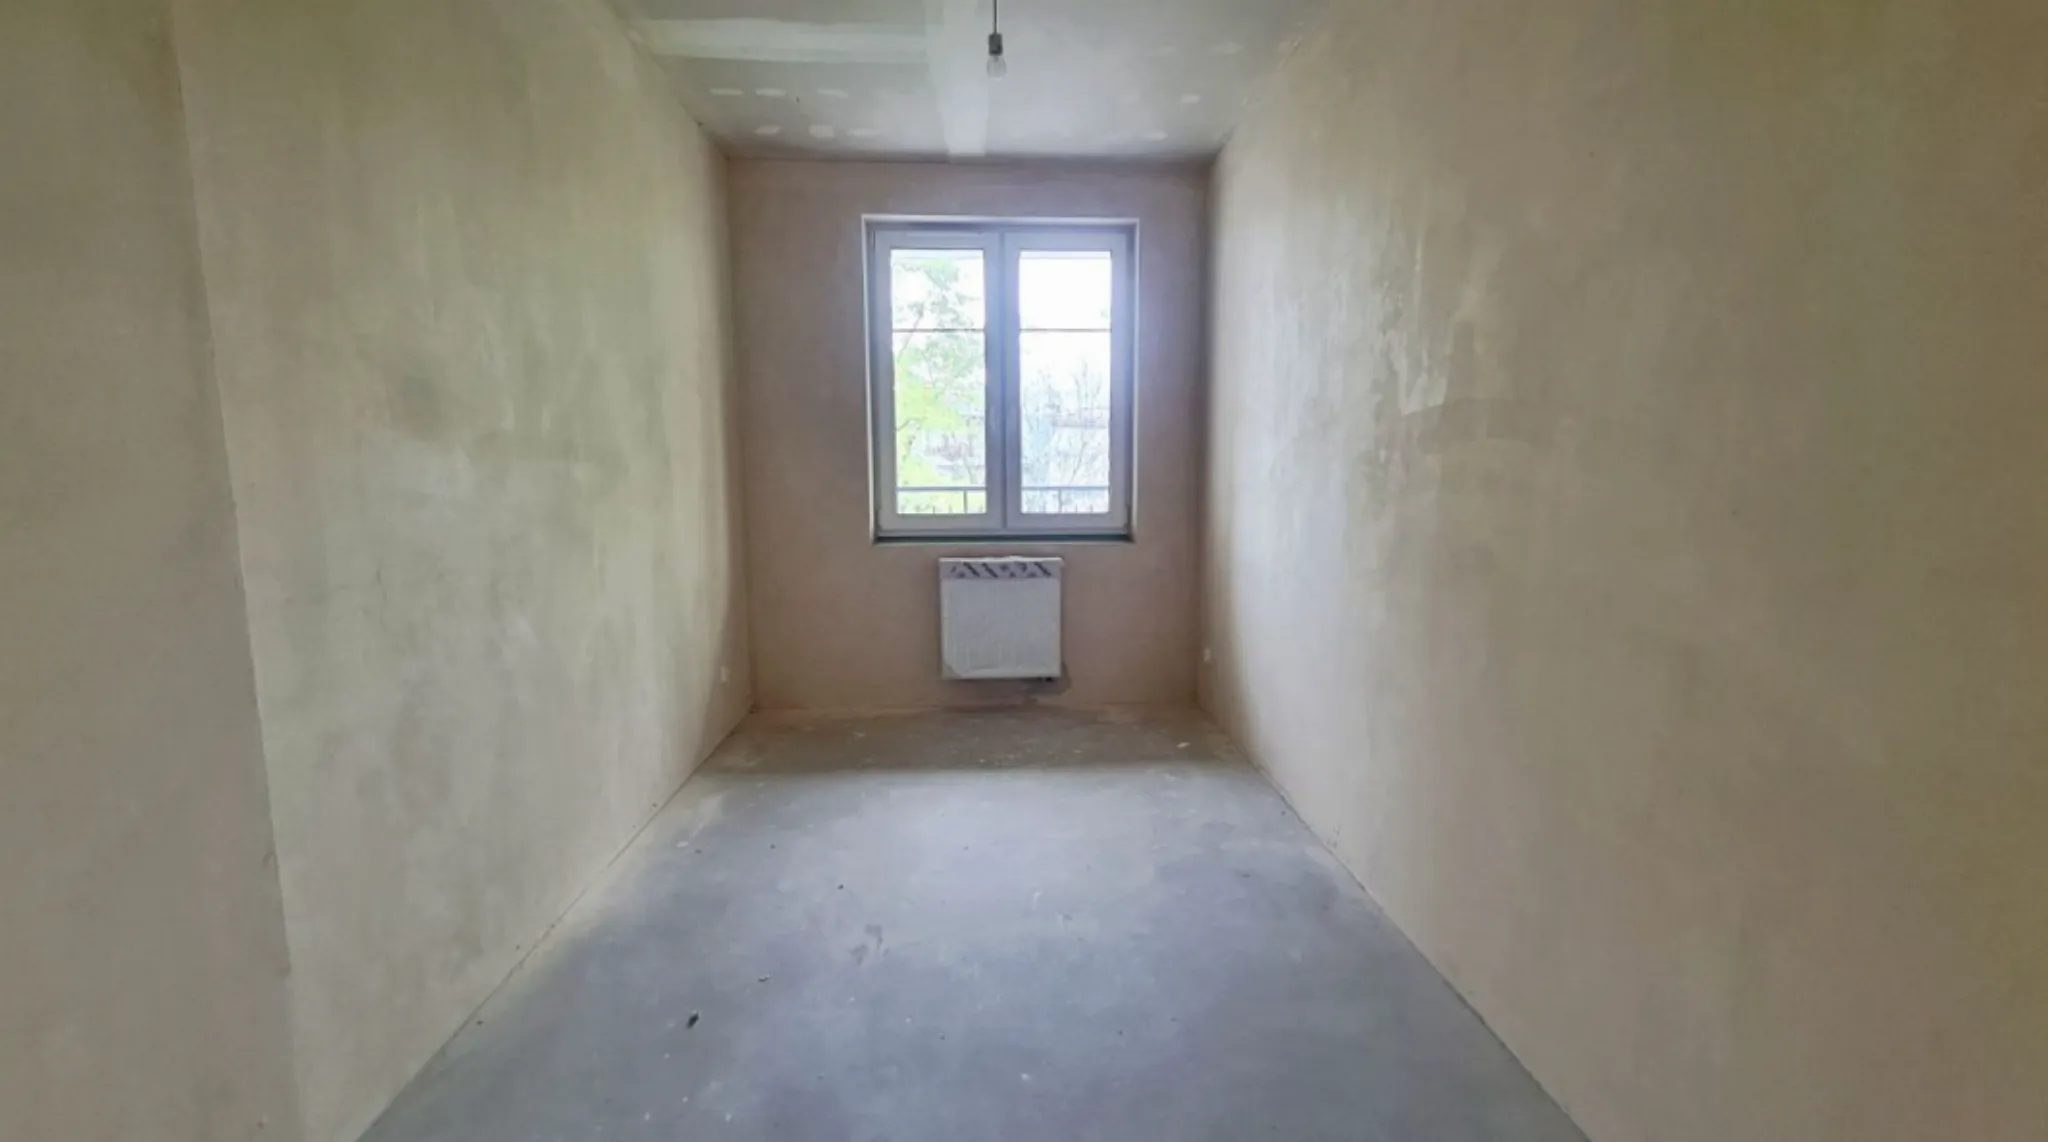 Krowodrza mieszkanie w stanie deweloperskim sprzedam - Mieszkanie na sprzedaż Kraków